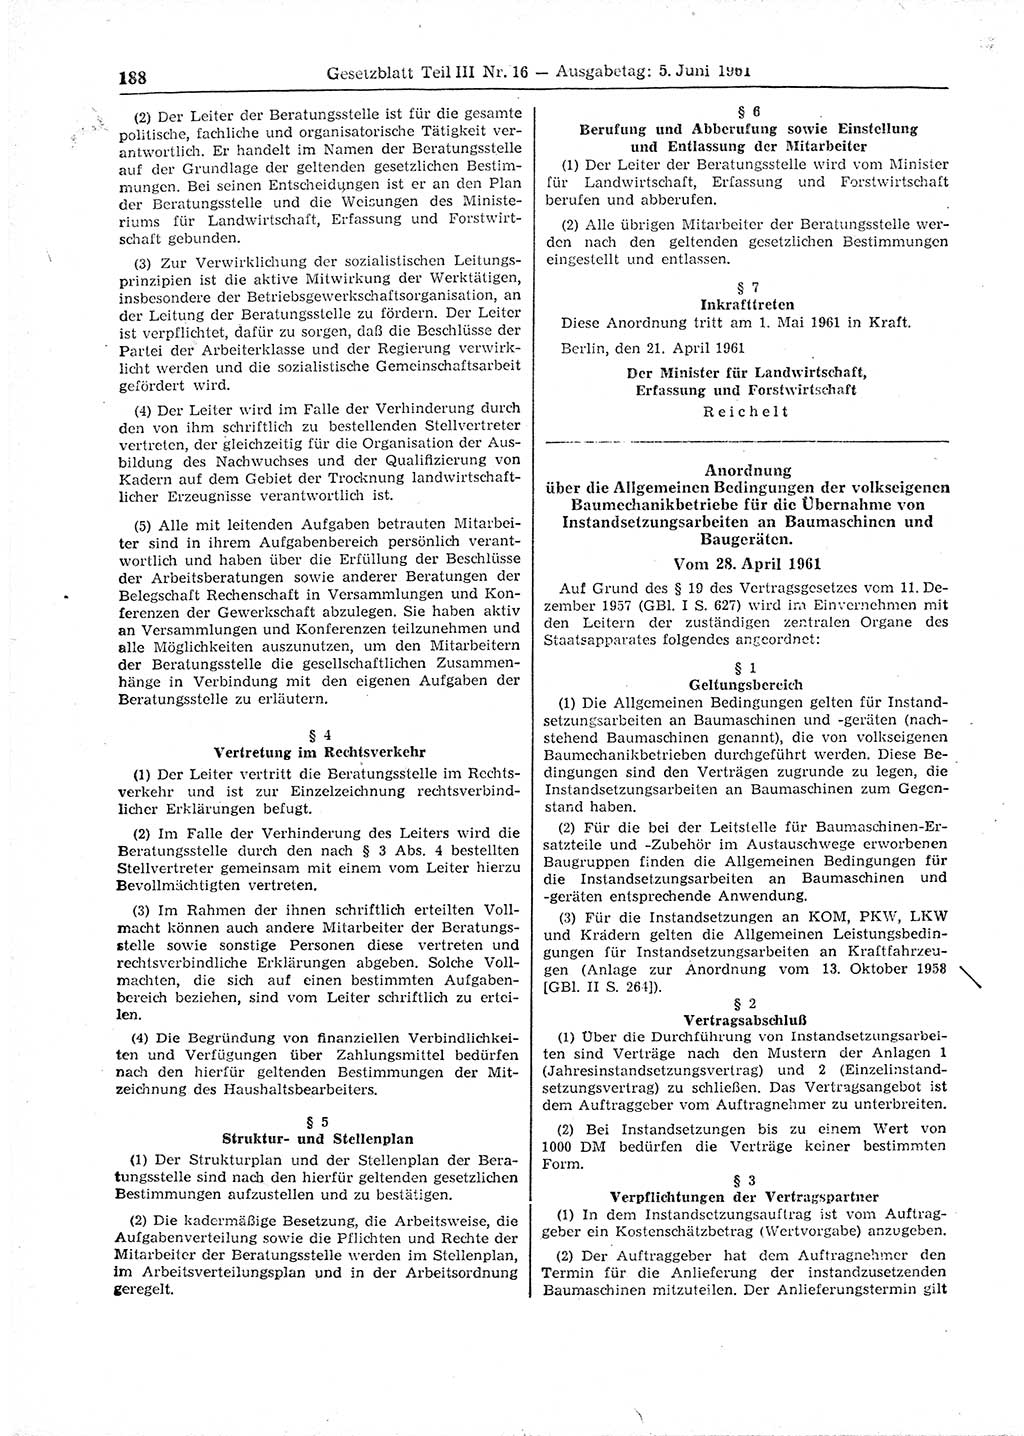 Gesetzblatt (GBl.) der Deutschen Demokratischen Republik (DDR) Teil ⅠⅠⅠ 1961, Seite 188 (GBl. DDR ⅠⅠⅠ 1961, S. 188)